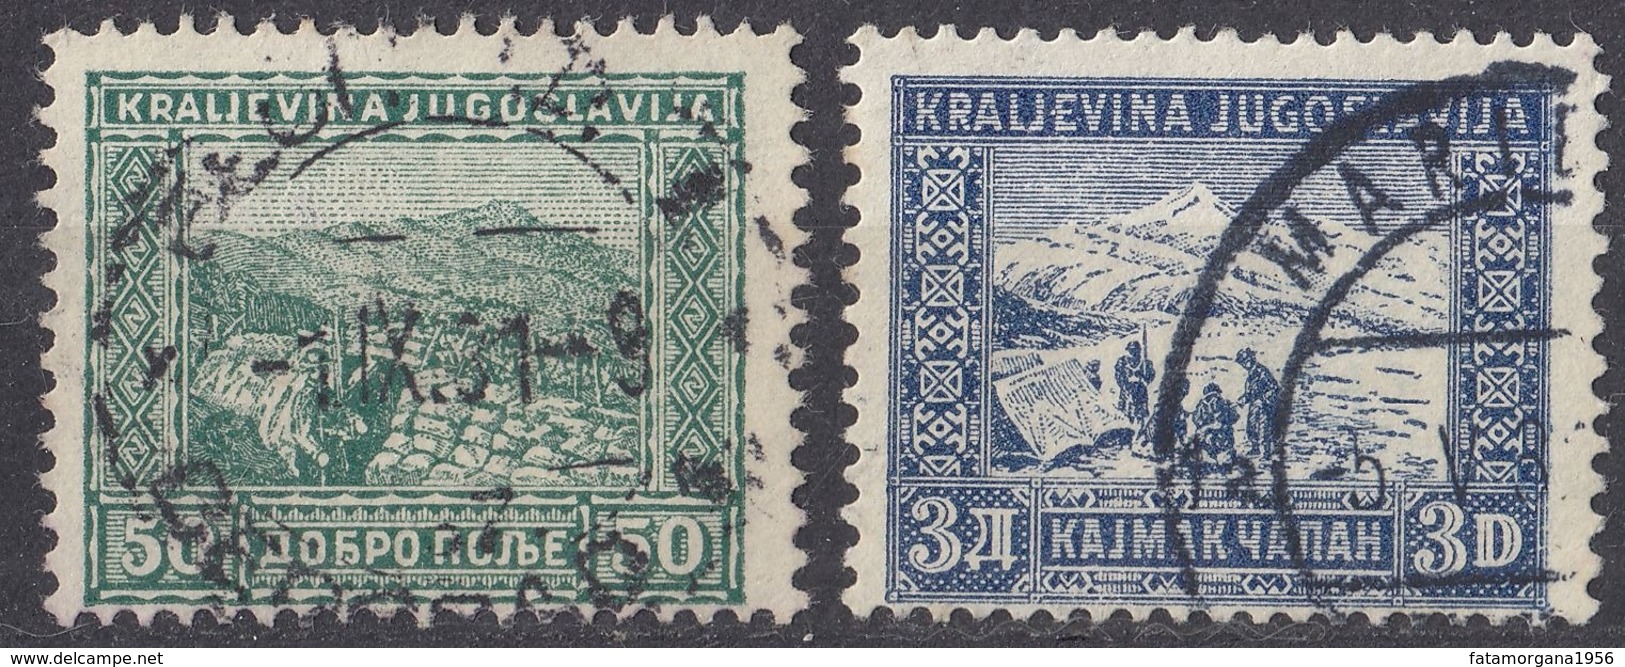 JUGOSLAVIA - 1931 - Lotto Composto Da 2 Valori Usati: Yvert 207 E 209. - Gebraucht